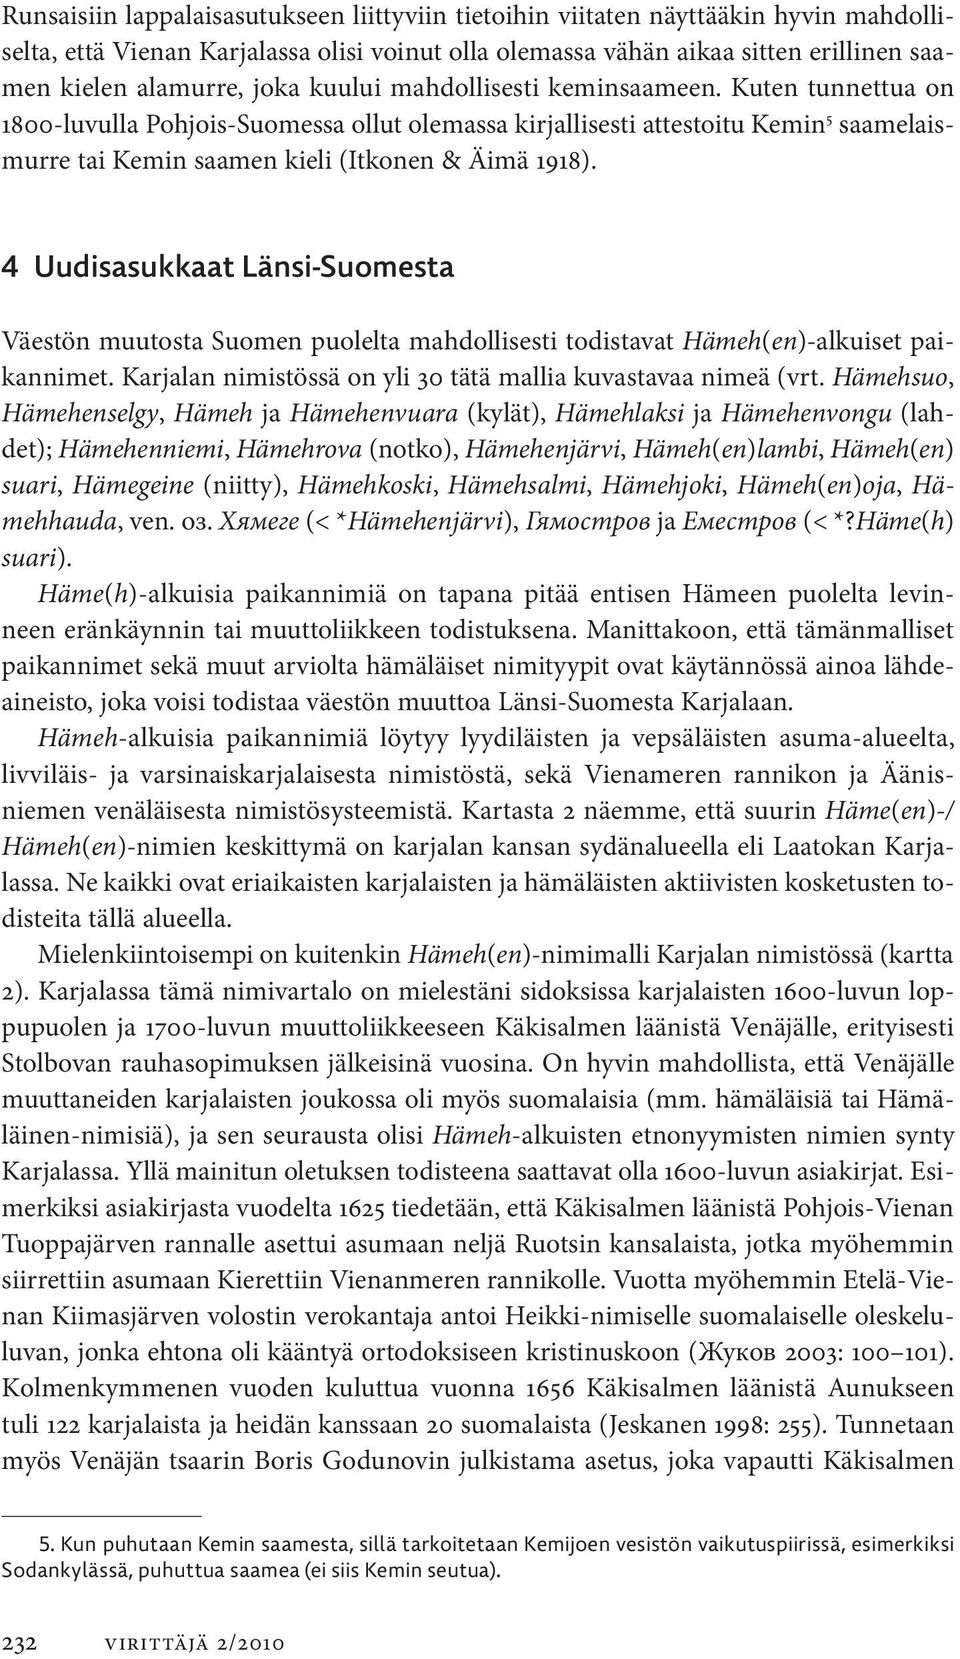 4 Uudisasukkaat Länsi-Suomesta Väestön muutosta Suomen puolelta mahdollisesti todistavat Hämeh(en)-alkuiset paikannimet. Karjalan nimistössä on yli 30 tätä mallia kuvastavaa nimeä (vrt.